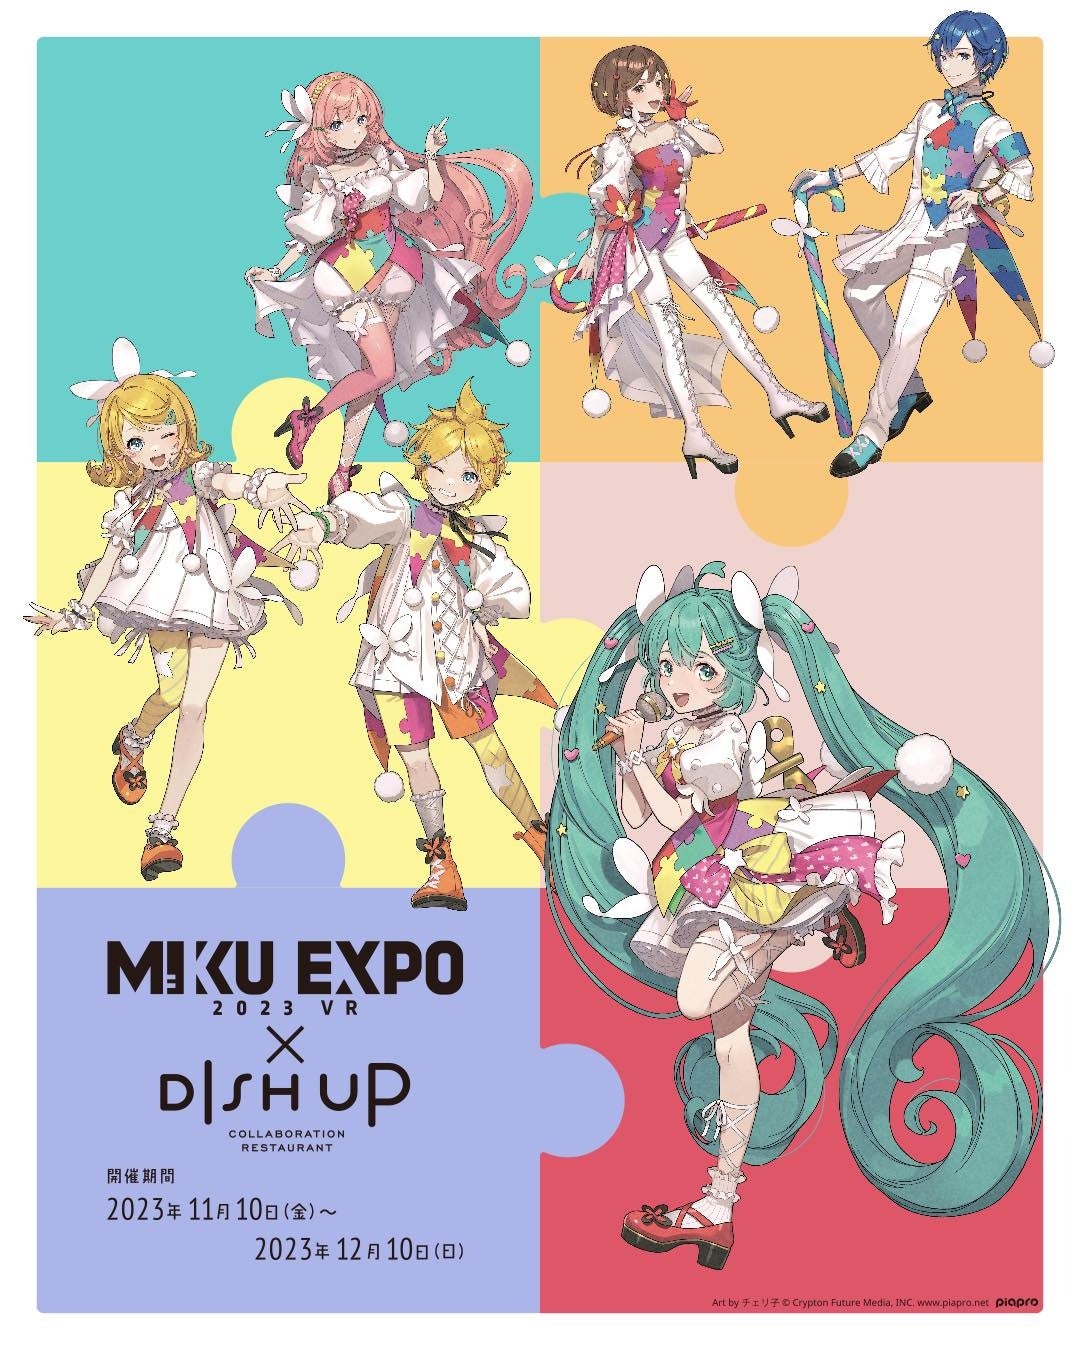 コラボレストランDISH UP『初音ミク』によるオンラインコンサート「HATSUNE MIKU EXPO 2023 VR」とのコラボ決定！！！